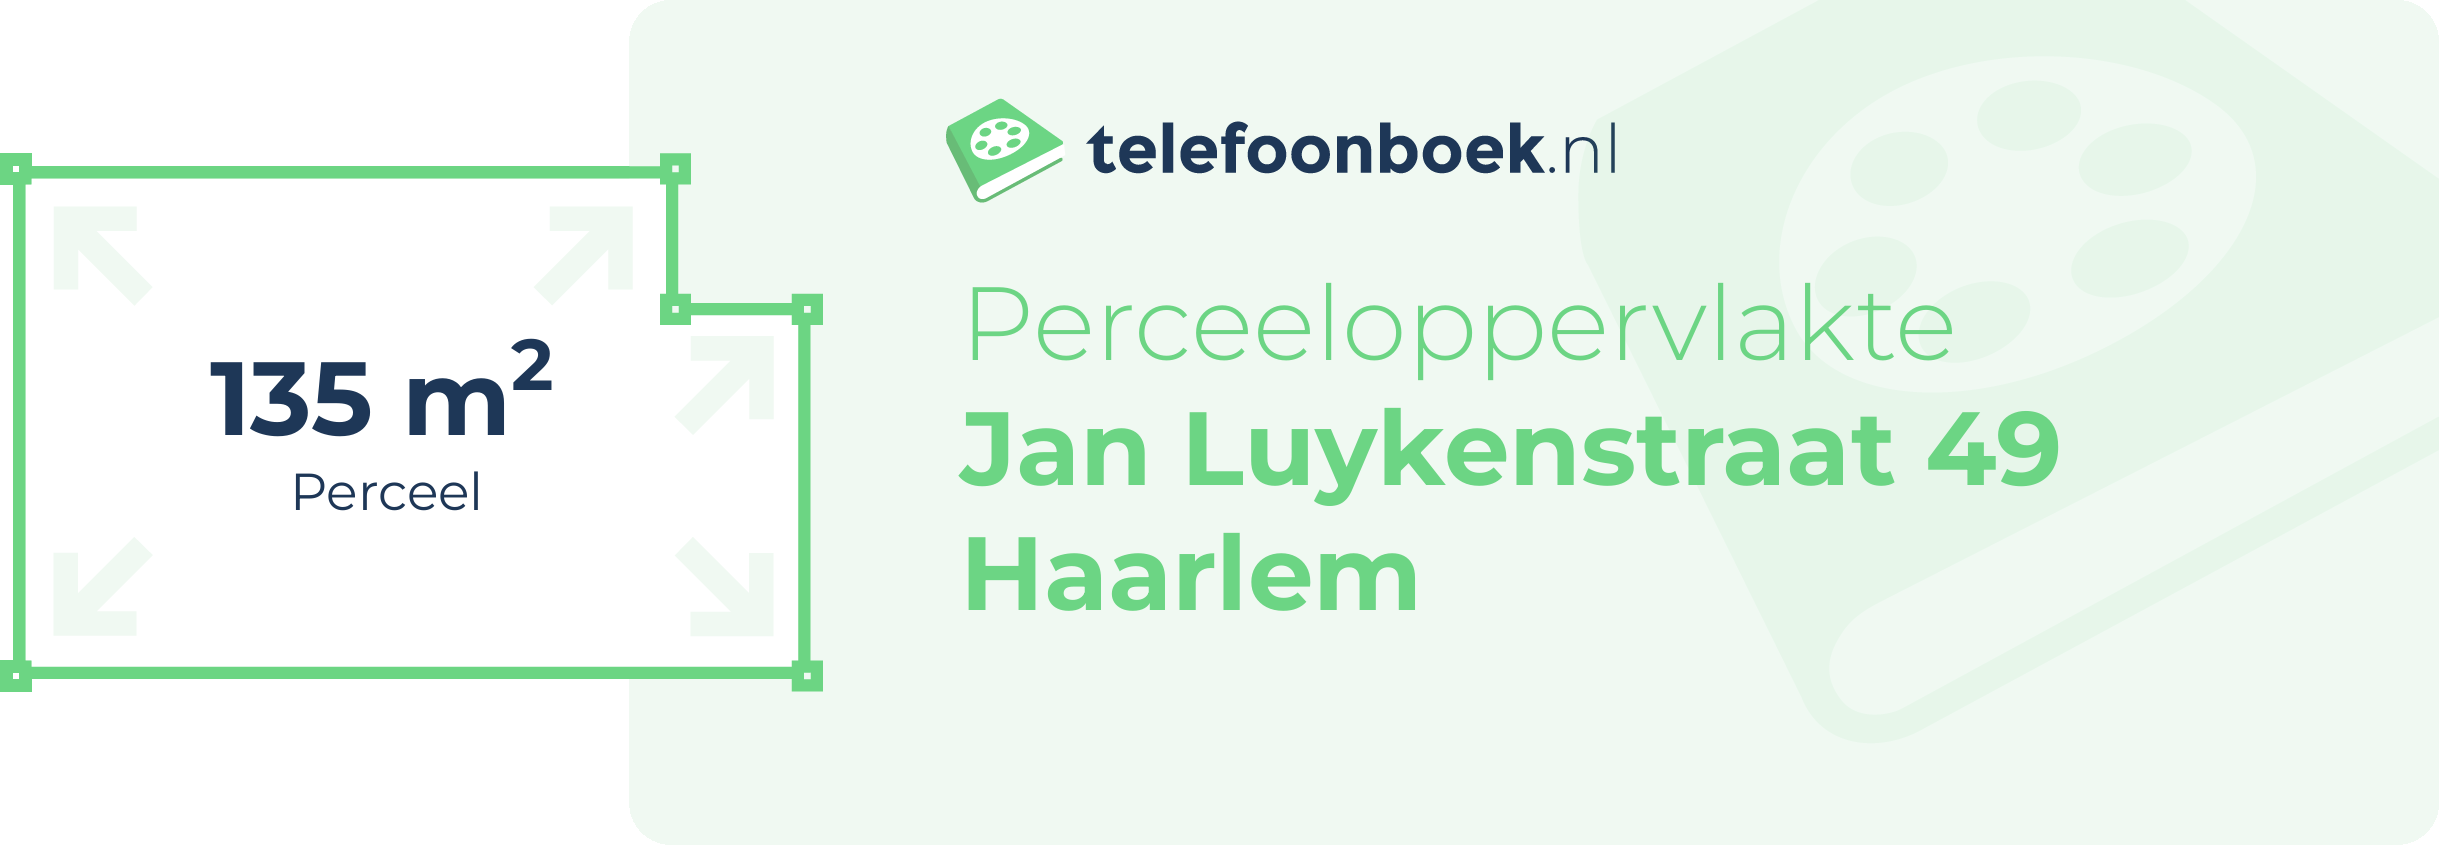 Perceeloppervlakte Jan Luykenstraat 49 Haarlem